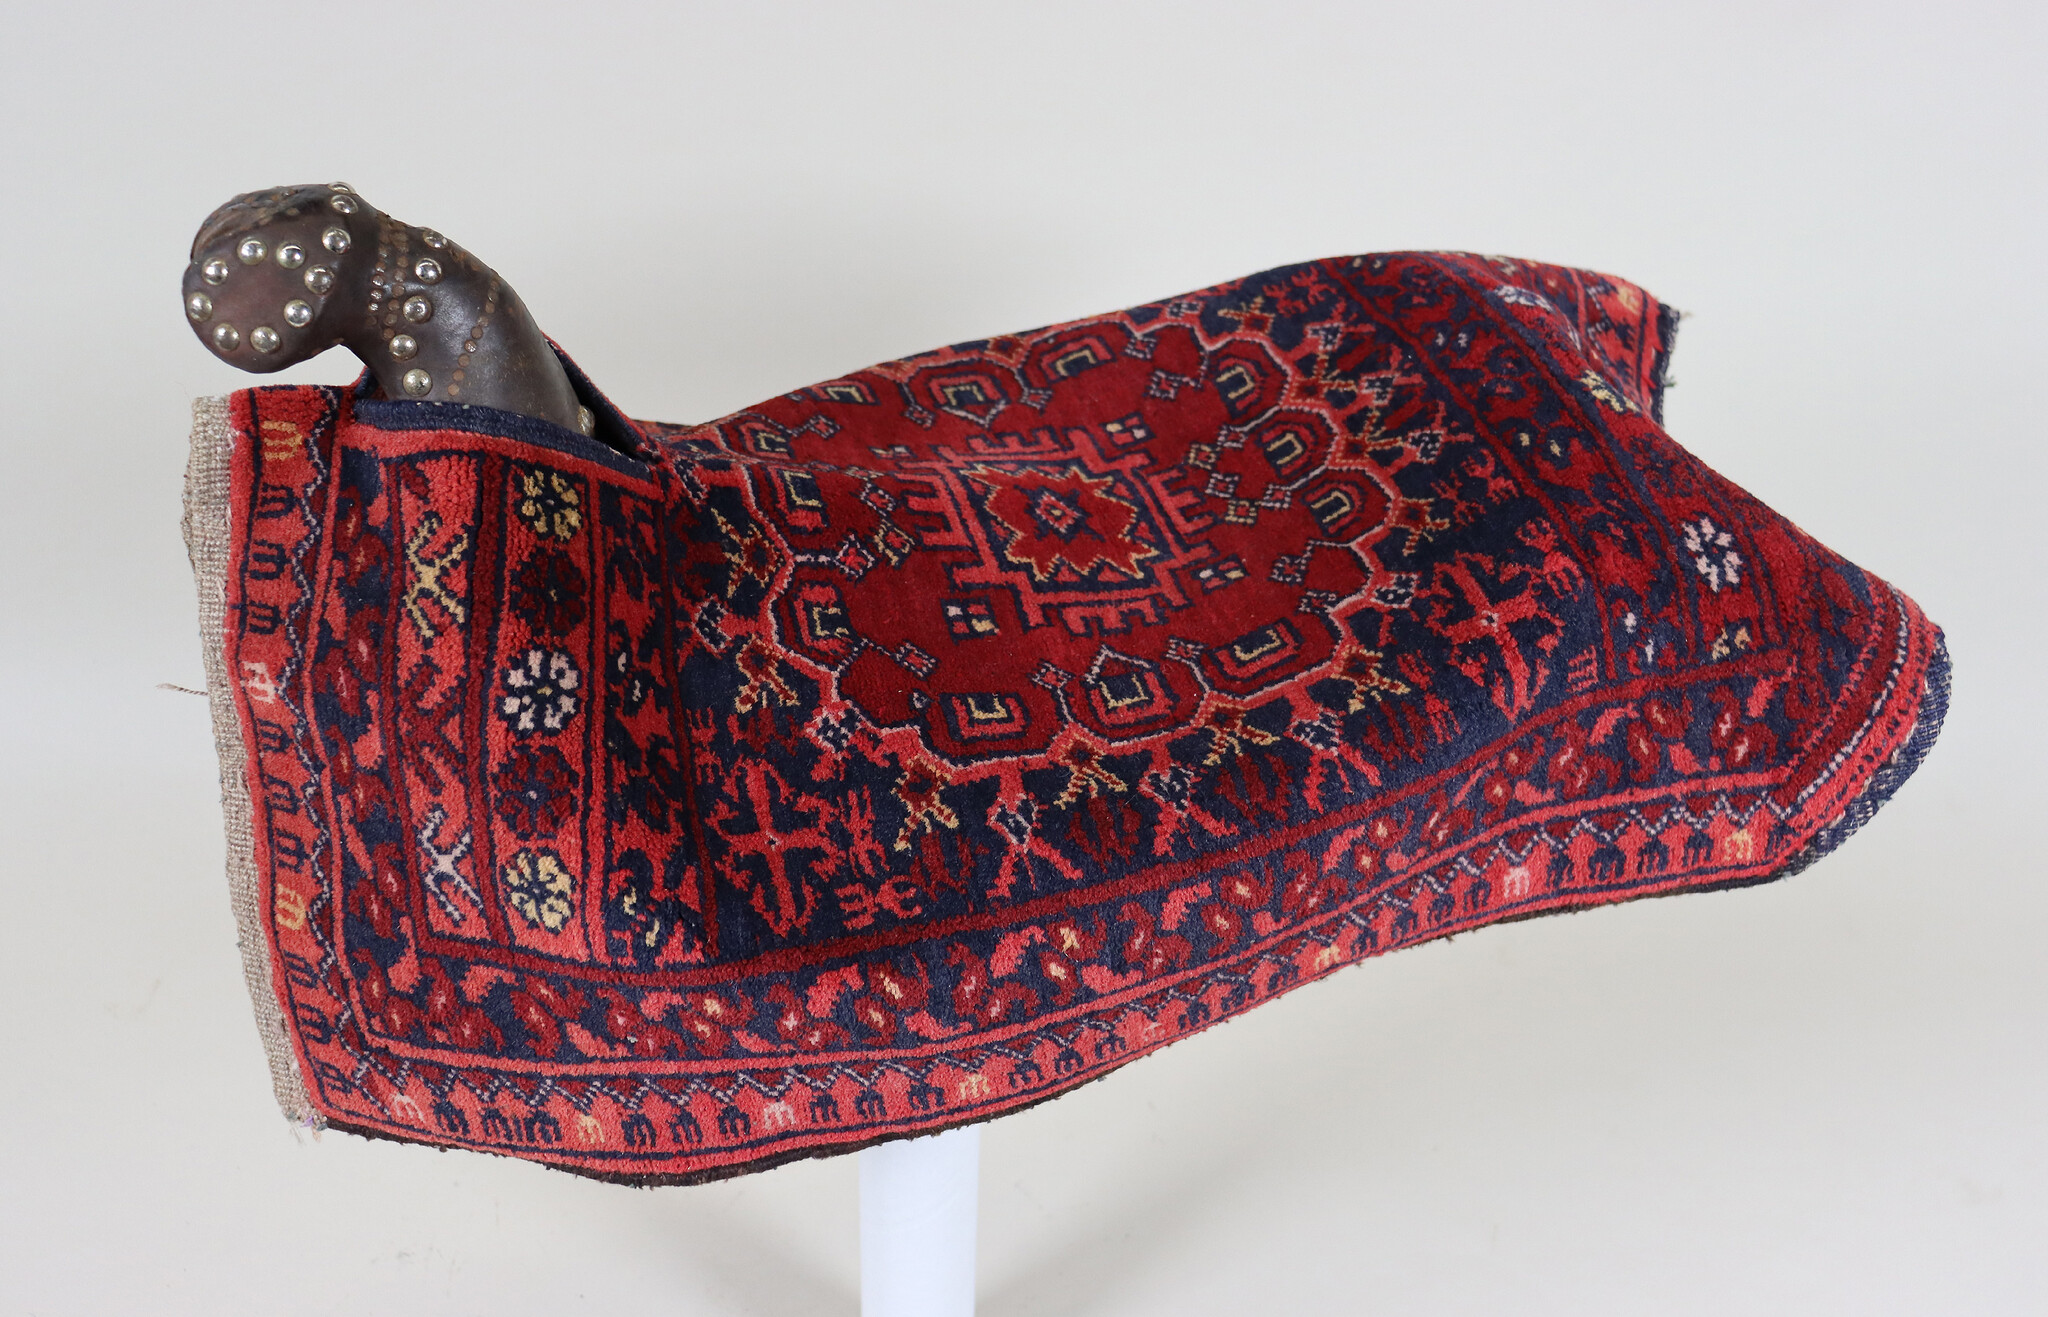 Antique Turkmen Ersari Elephant foot design Turkmen Rug Horse saddle cover blanket rug from Afghanistan Nr:23A